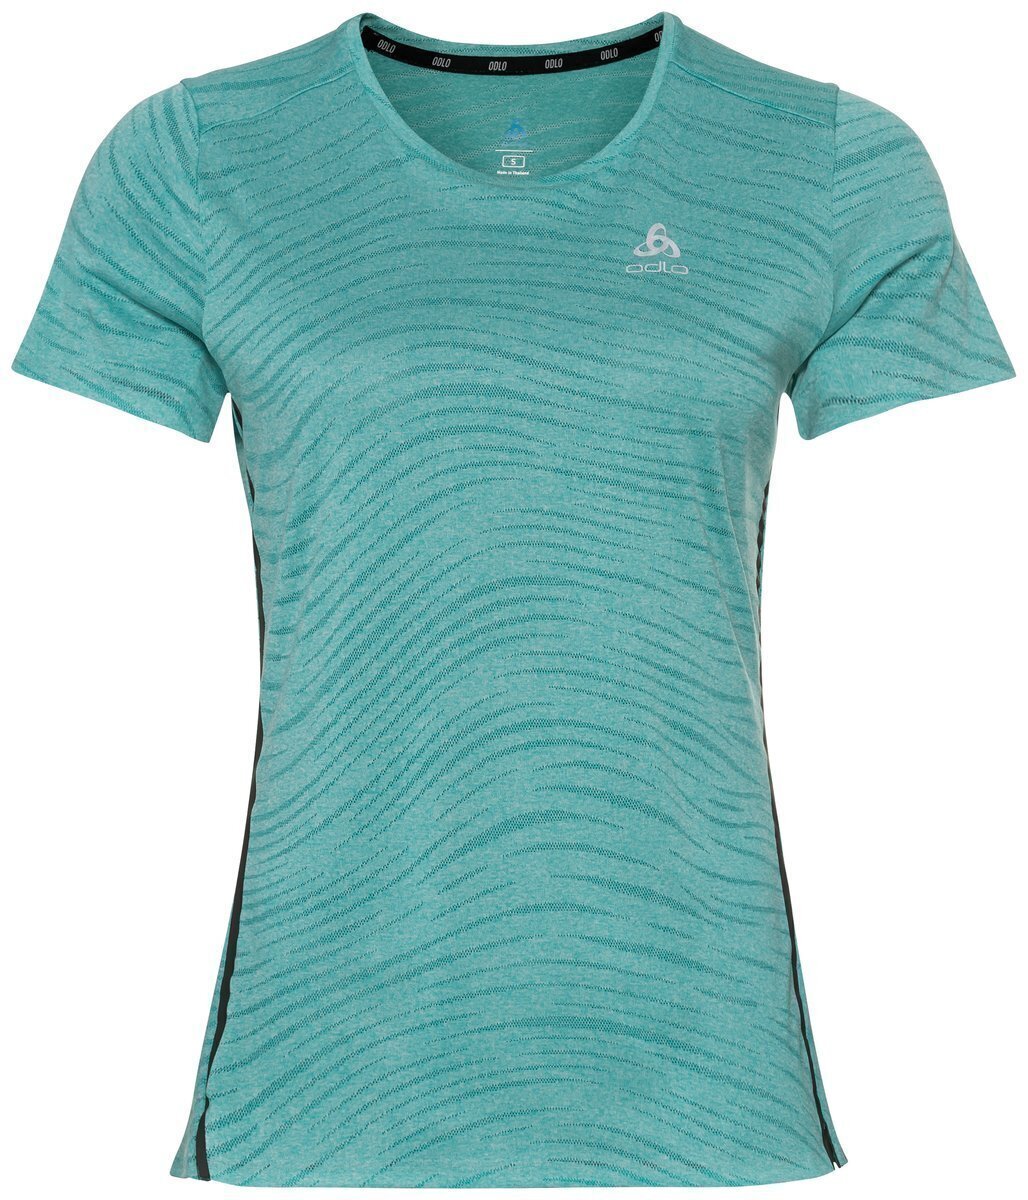 Tricou cu mânecă scurtă pentru alergare
 Odlo Zeroweight Engineered Chill-Tec T-Shirt Jaded Melange S Tricou cu mânecă scurtă pentru alergare